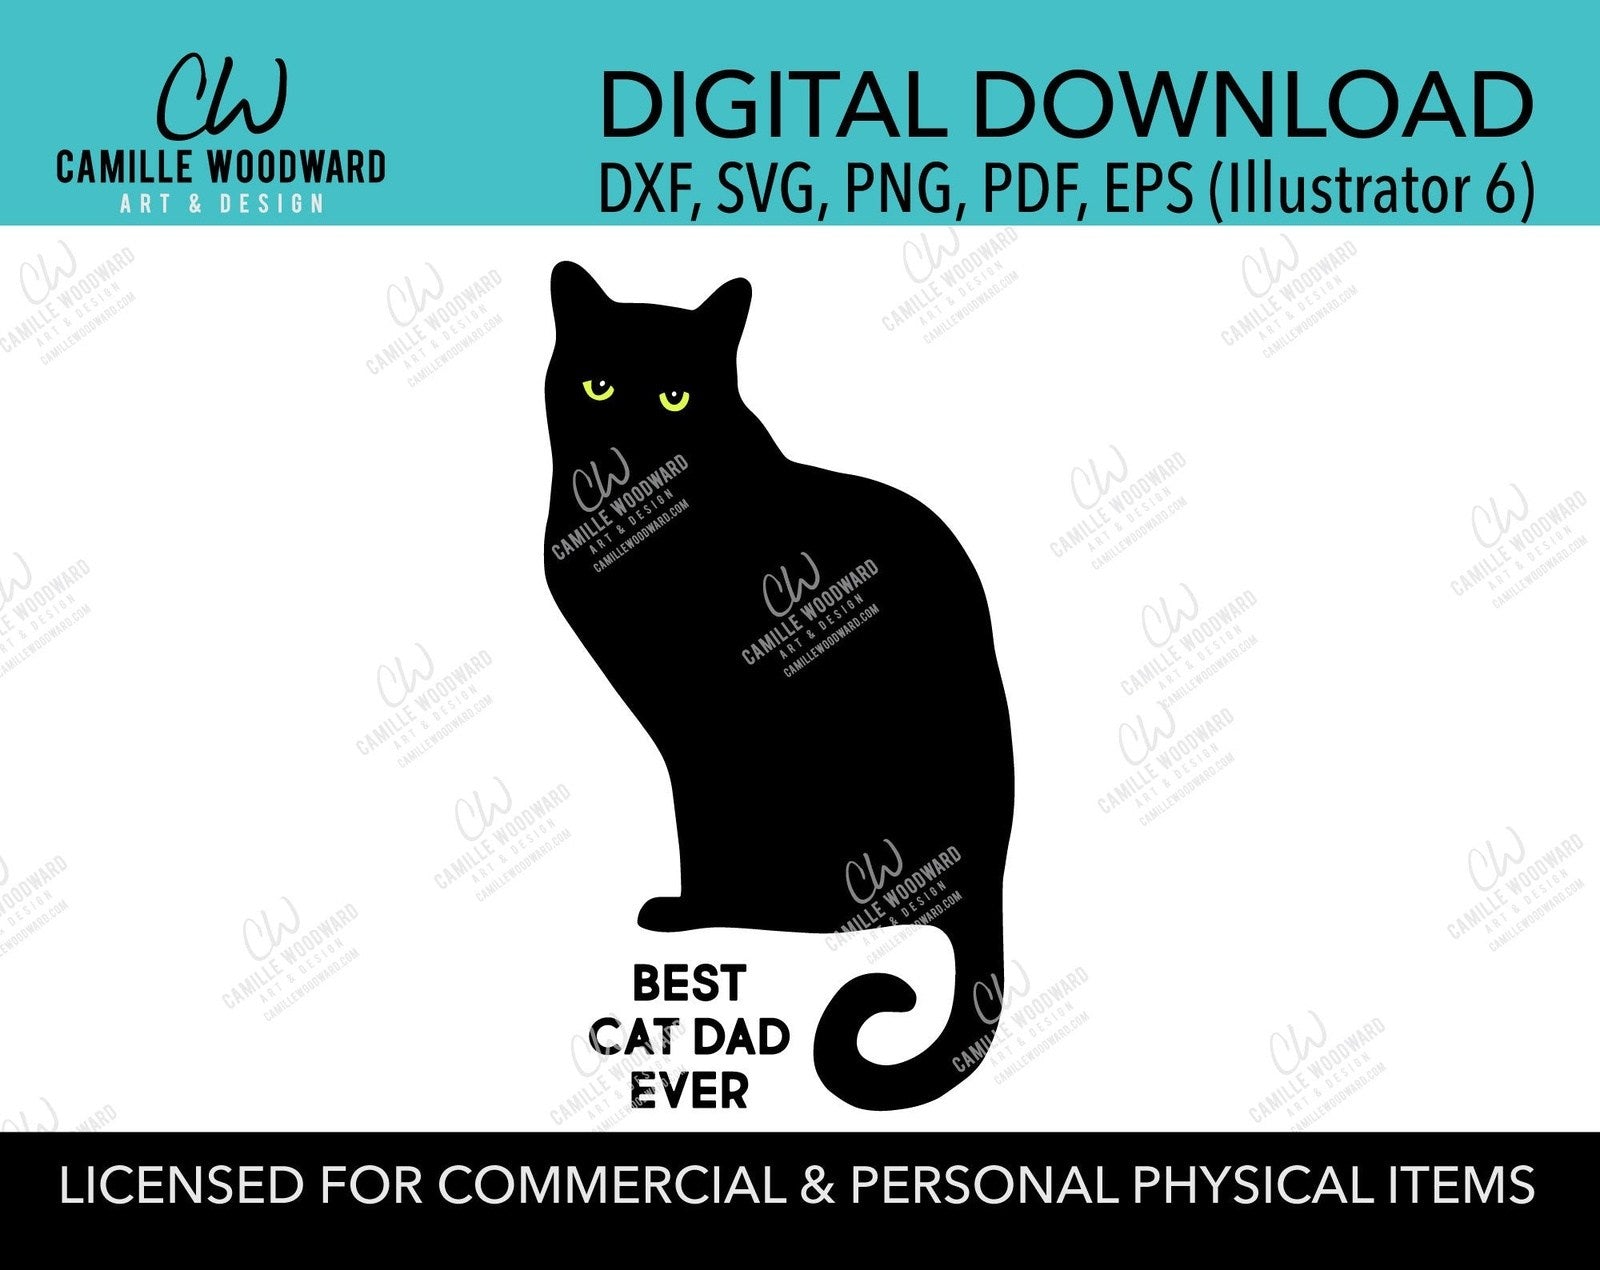 Download Best Cat Dad Ever Svg Digital Download Camille Woodward Art Design Llc